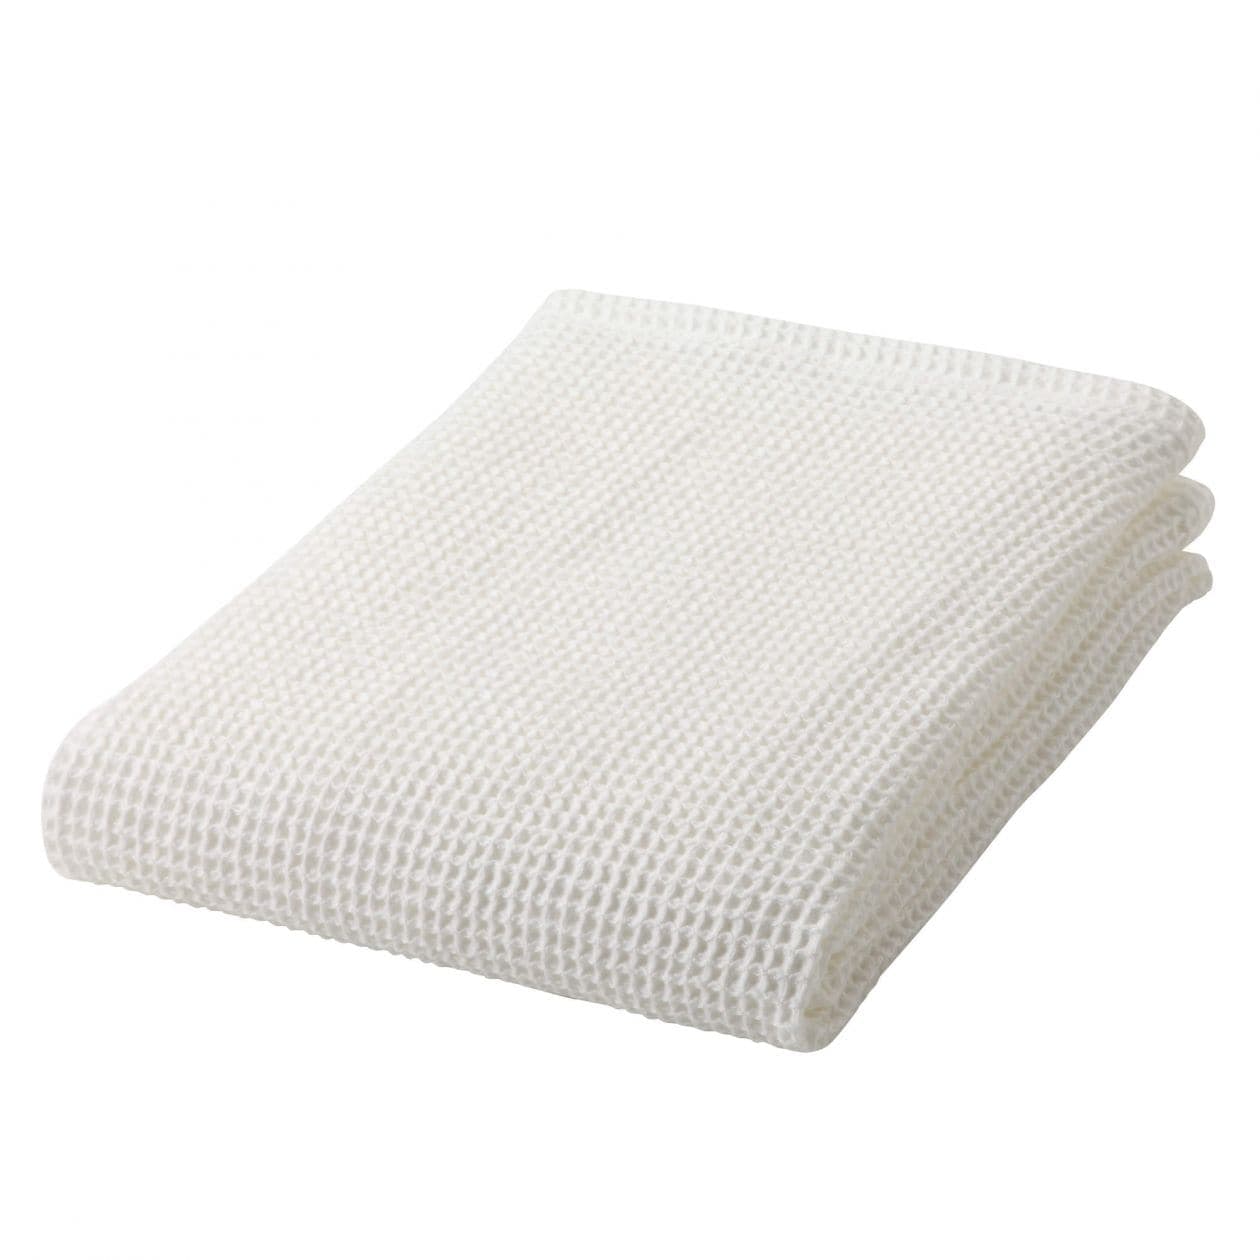 Х б полотенце. Вафельное полотенце белое 80г/м. Полотенца хлопчатобумажные белые. Вафельное полотенце хлопчатобумажные ткани. Полотенце вафельное белое в рулоне.